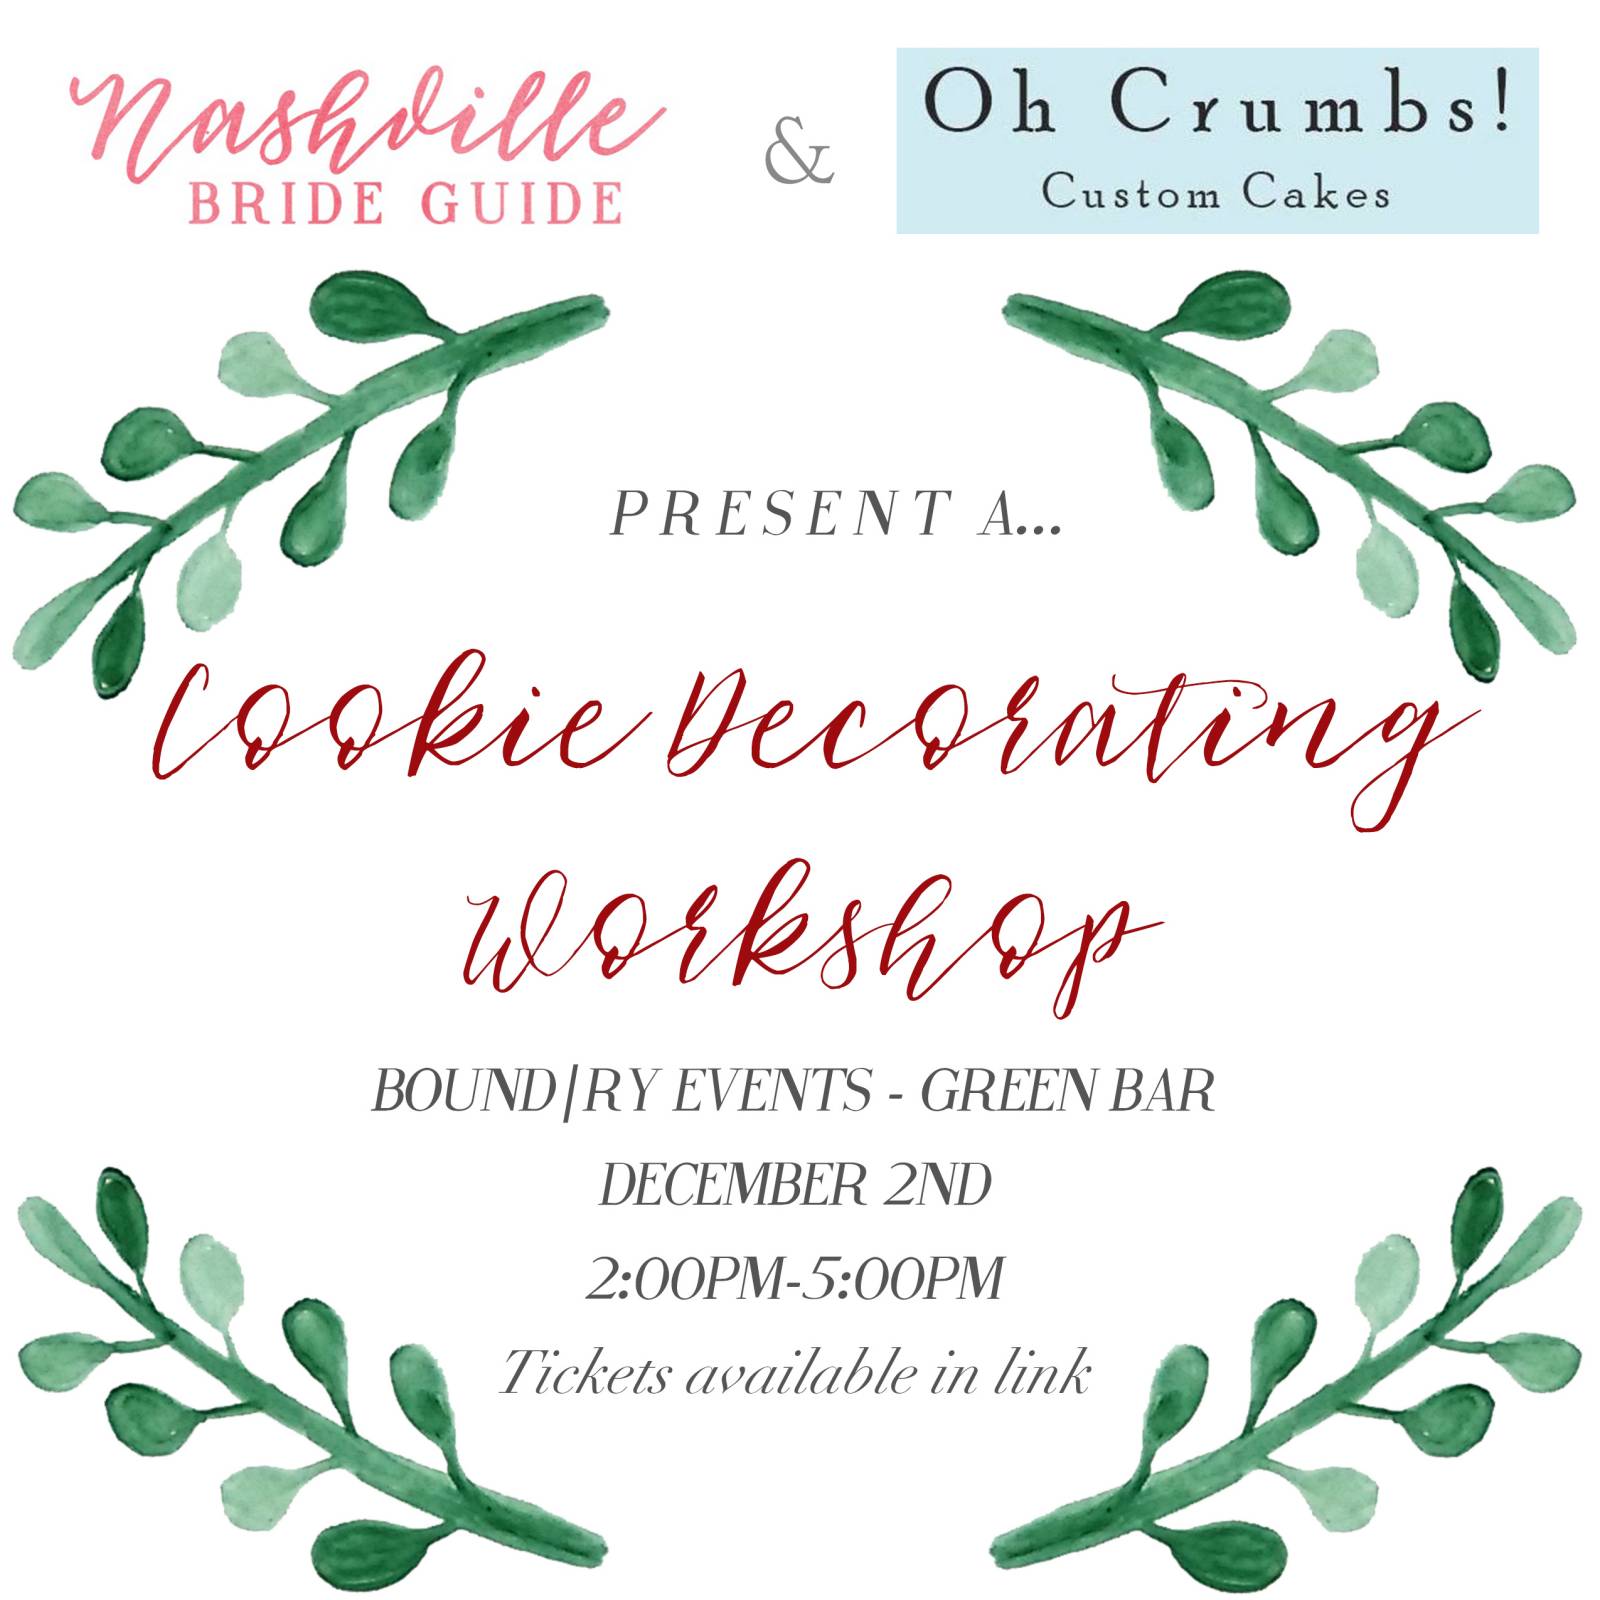 Nashville Bride Guide + Oh Crumbs! Bakery Host Cookie Decorating Workshop for Brides |  Nashville